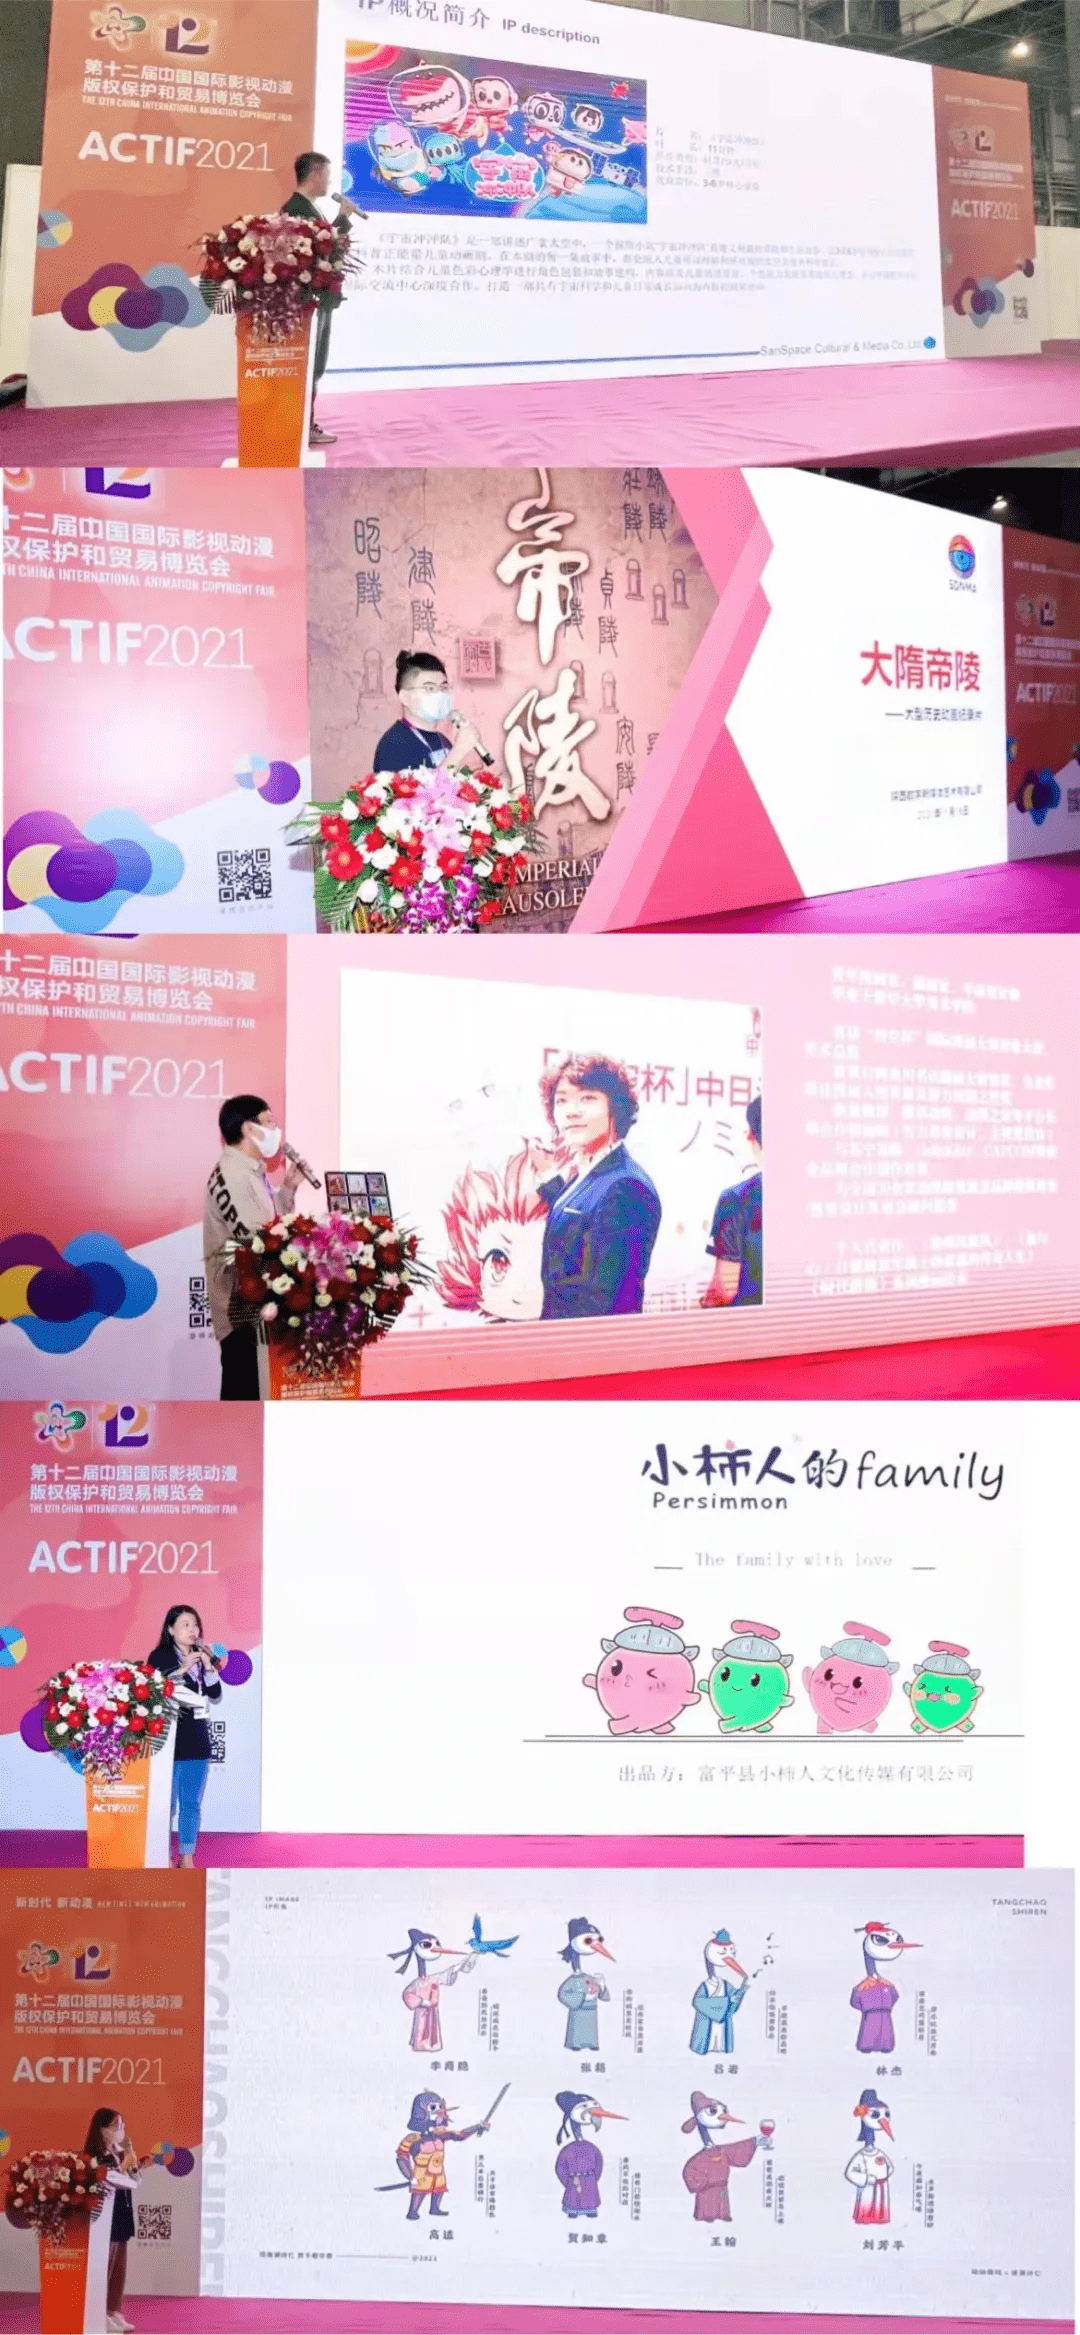 陕西数字文化创意馆在第十二届漫博会闪亮登场(图9)